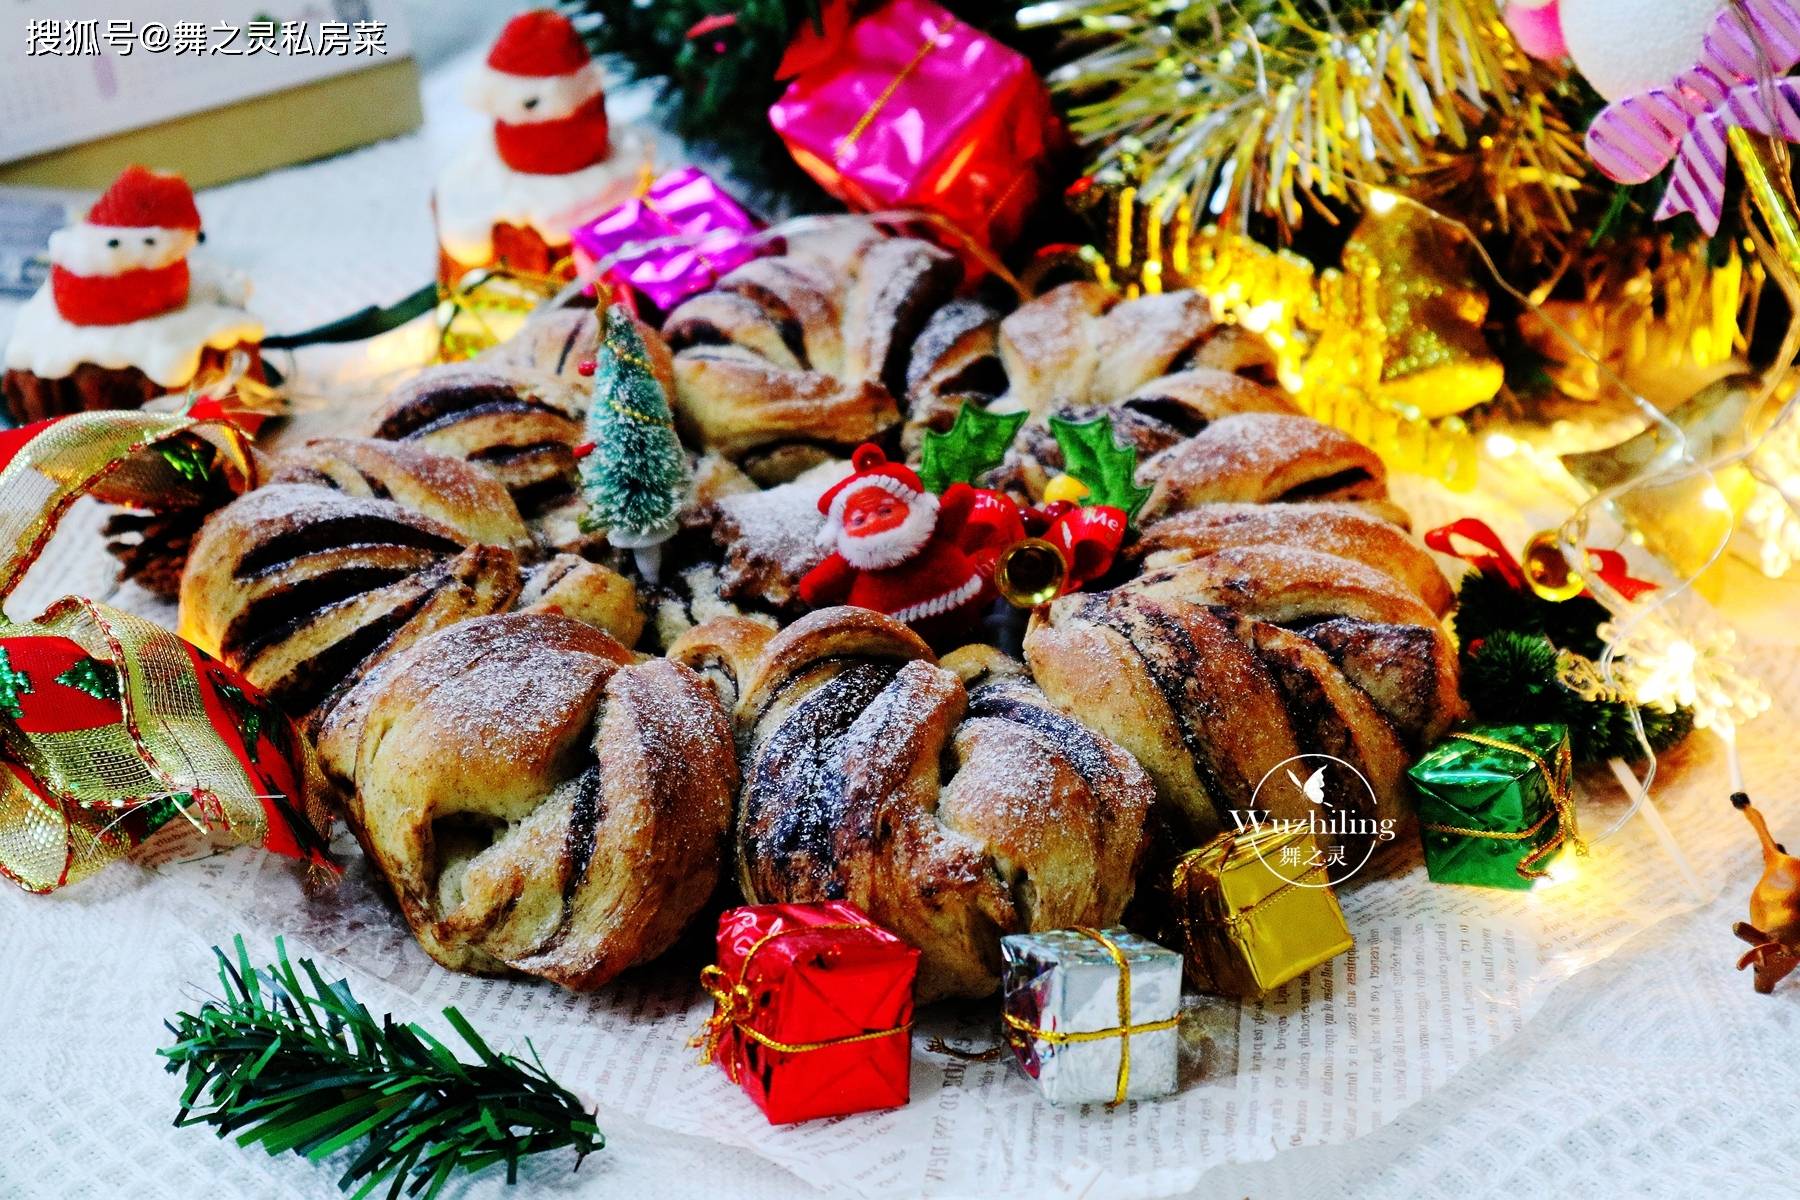 圣诞雪花面包,最好吃的面包方子,收藏了,孩子一定喜欢